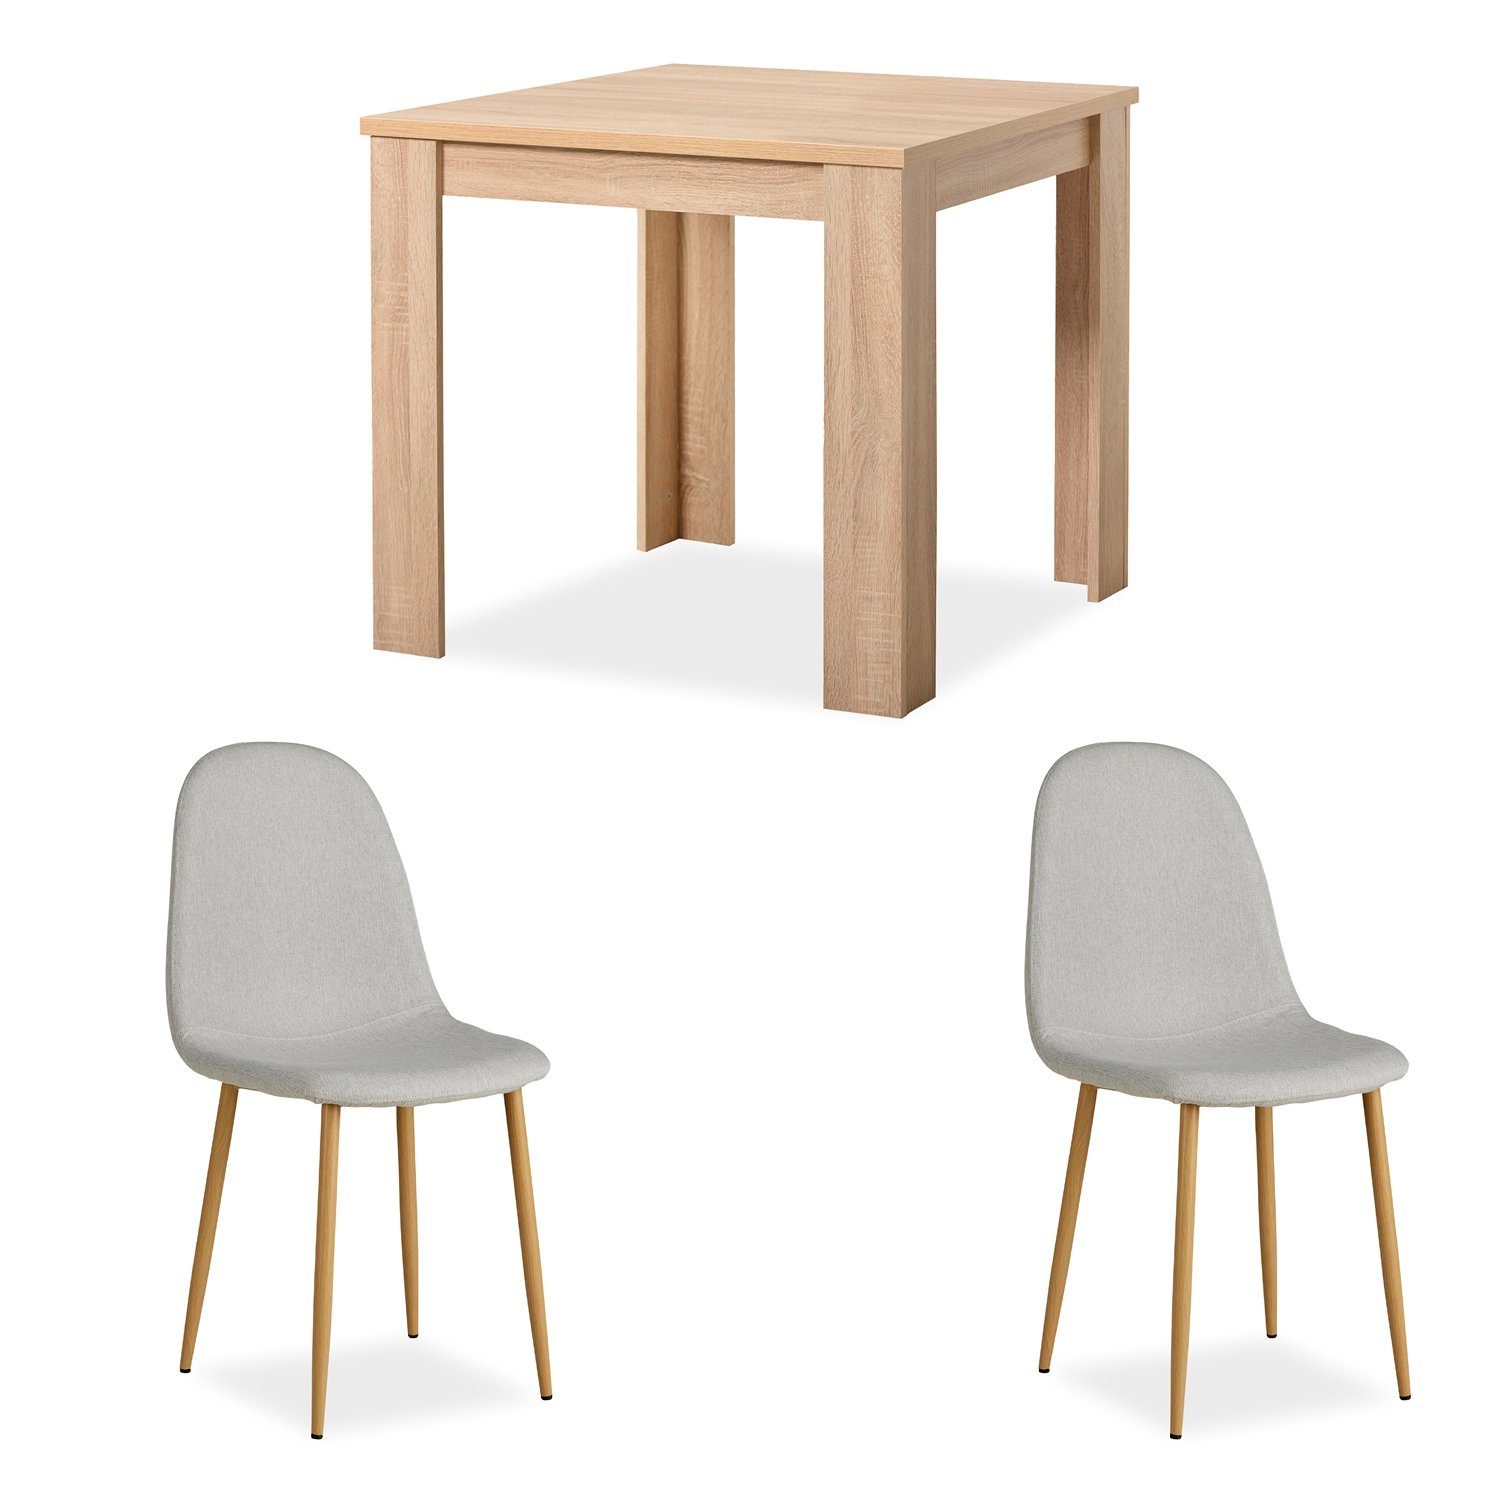 Homestyle4u Essgruppe Tisch mit 2 Stühlen Esstisch 80x80 Holz Natur